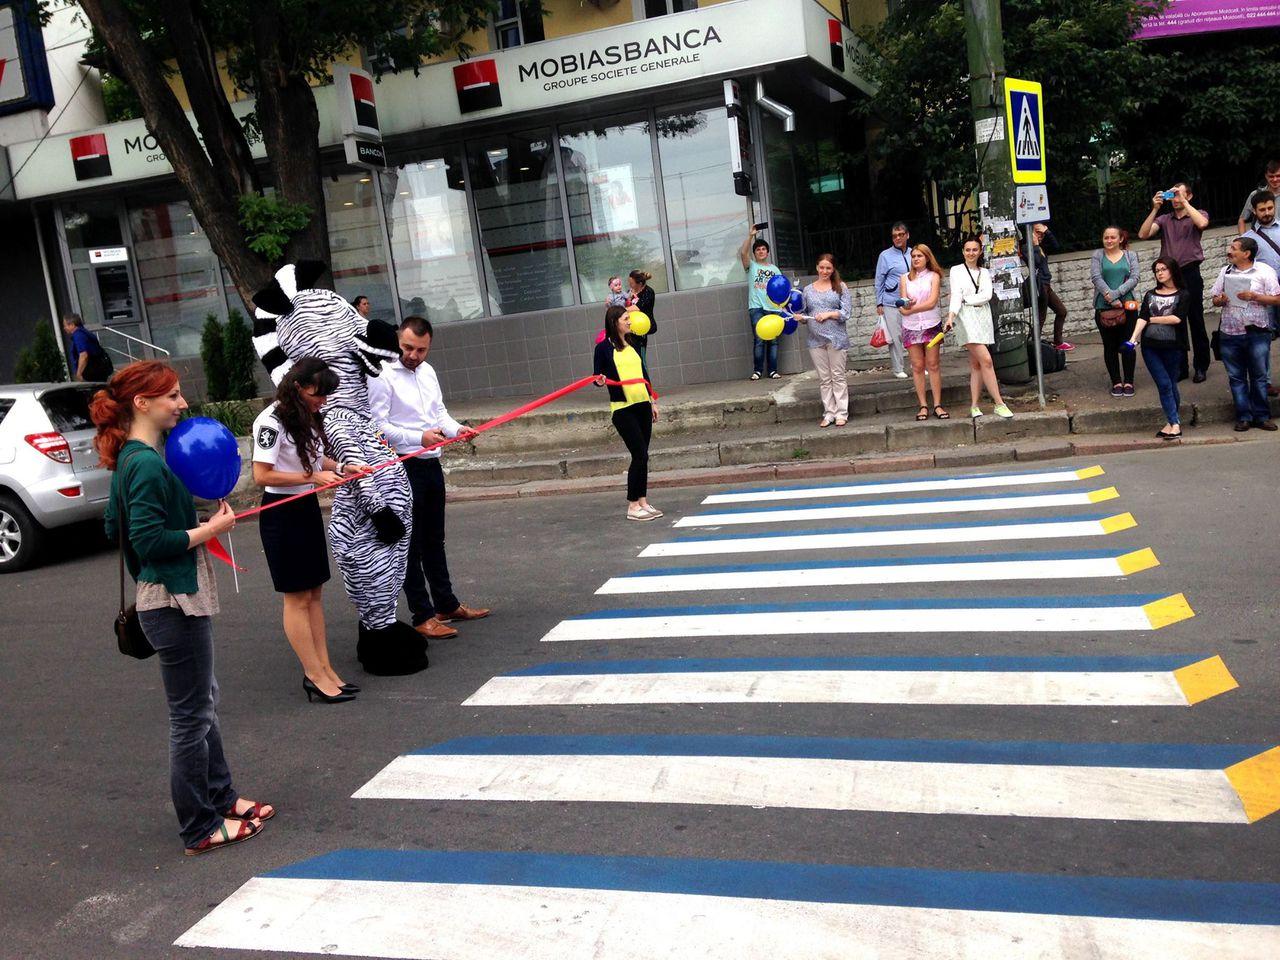 Первый пешеходный переход с 3D эффектом появился в Кишиневе